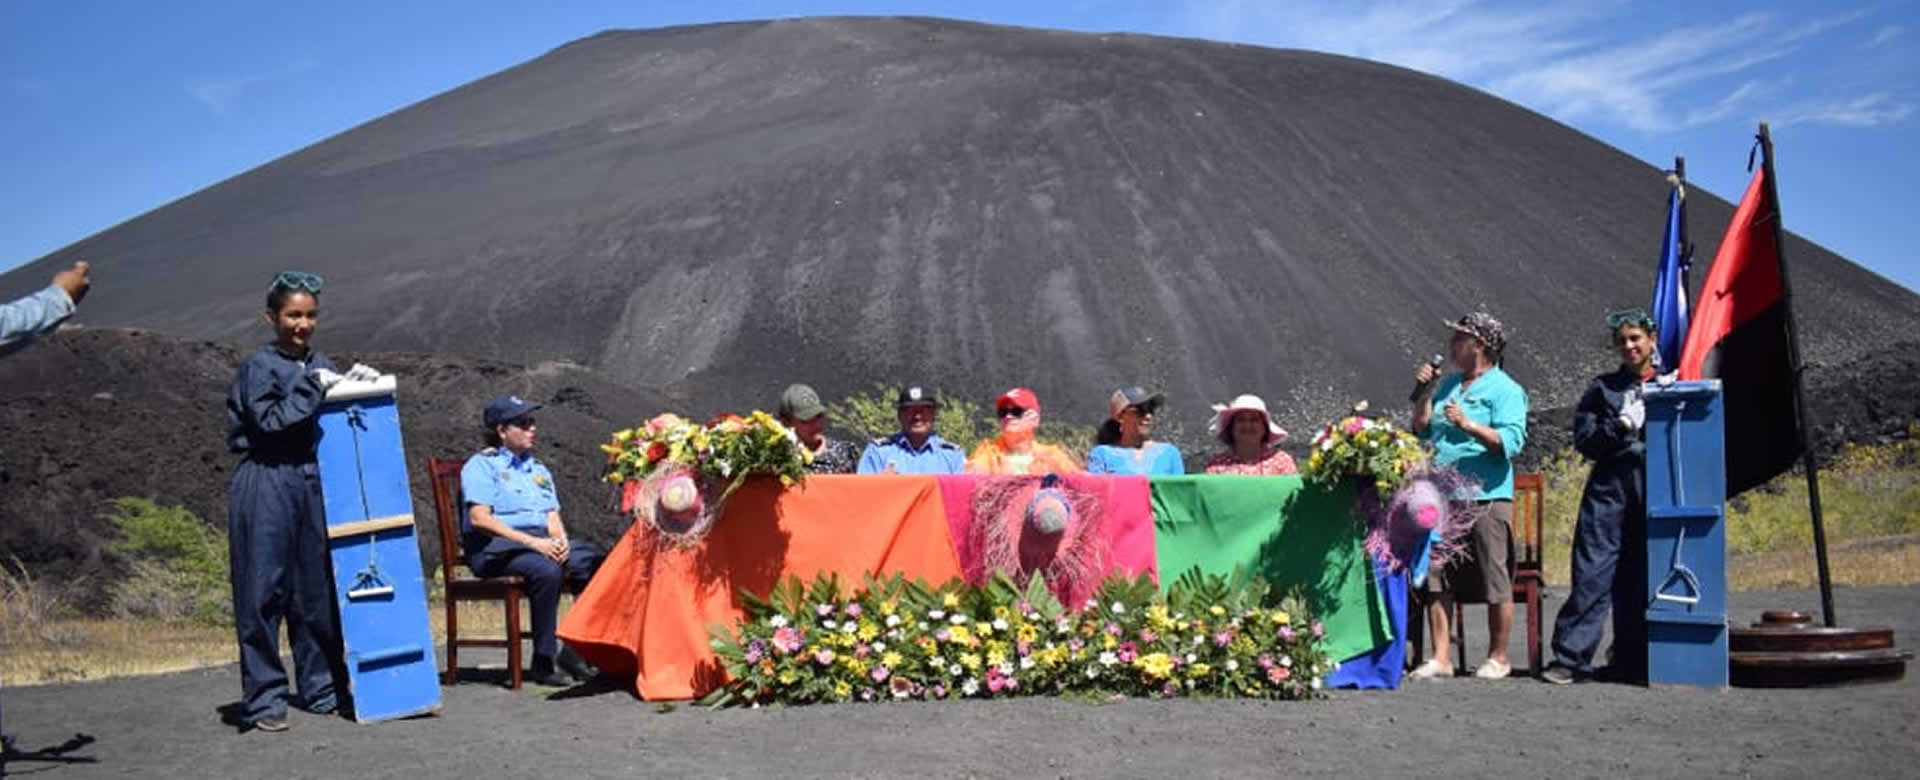 INTUR realiza el relanzamiento de la "Ruta de los Volcanes" desde el Cerro Negro